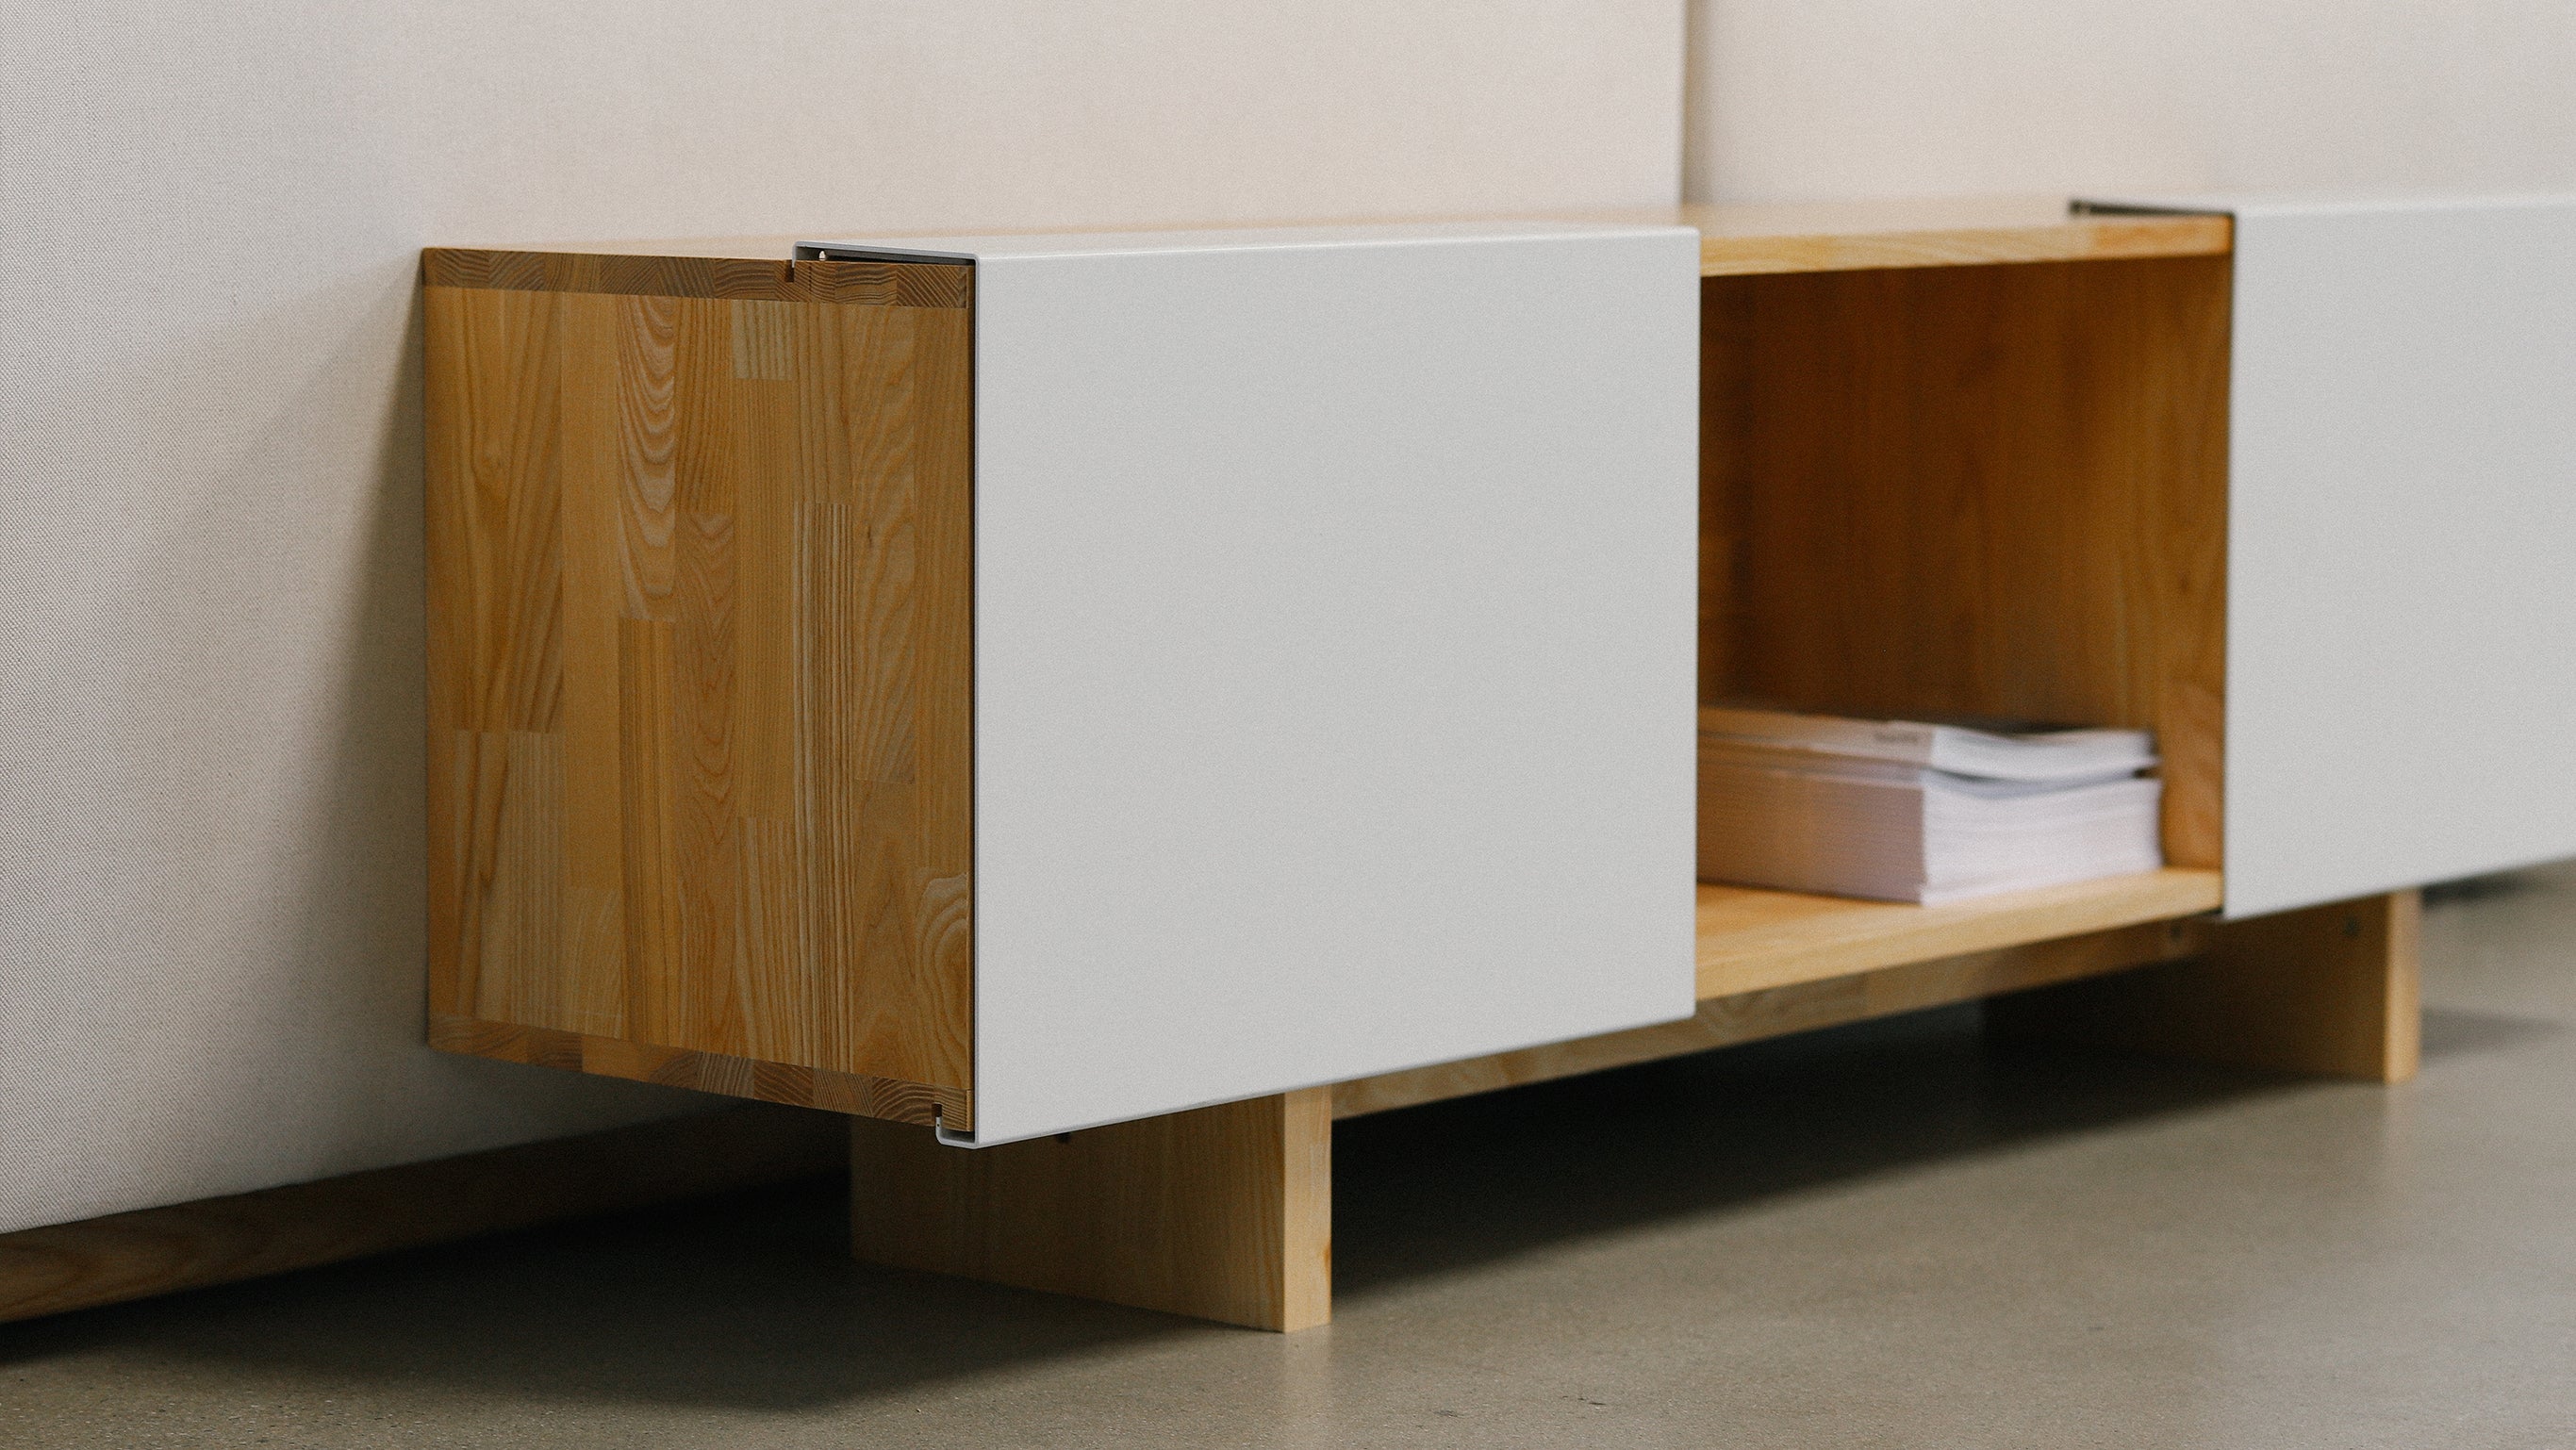 3X Shelf with Base- English Walnut, Gloss White Panels